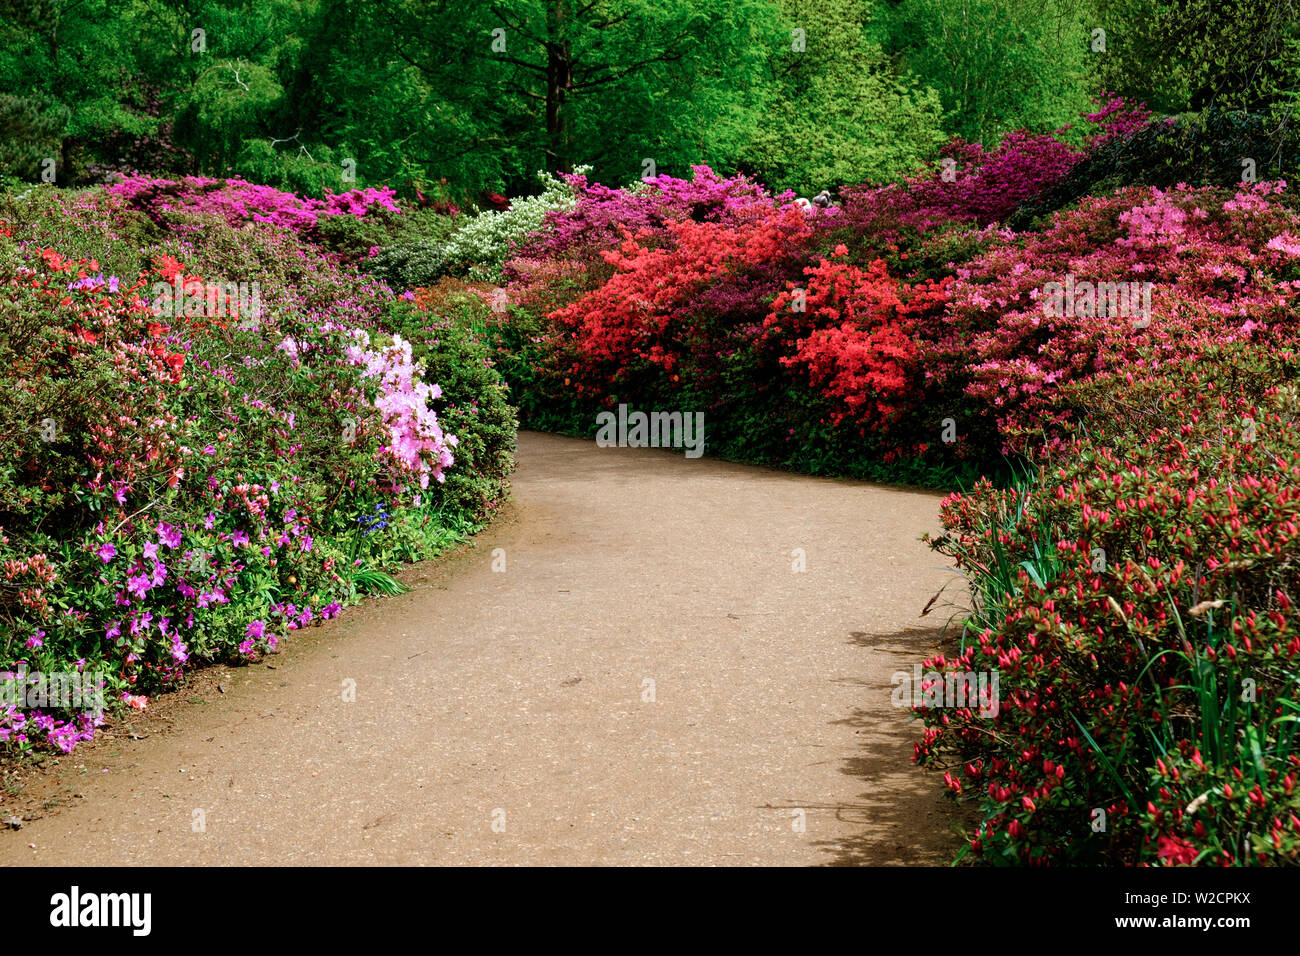 Konturpfad mit Sträuchern rot, lila und rosa Blumen, grünen Laub & Bäume im Hintergrund gesäumt. Feder an Isabella Plantation, Richmond Park, London Stockfoto